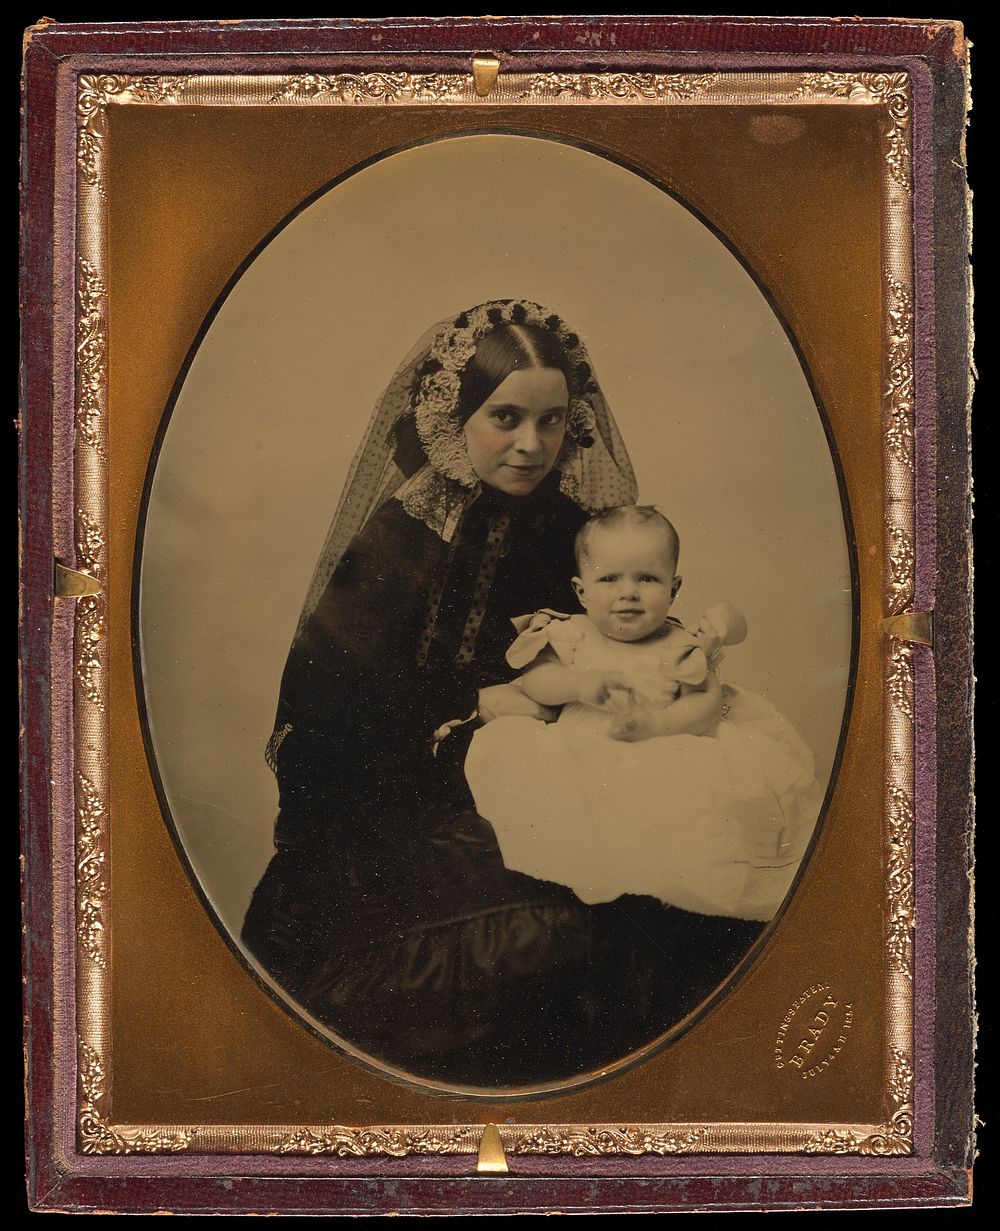 Portrait of a woman and child by Mathew B Brady